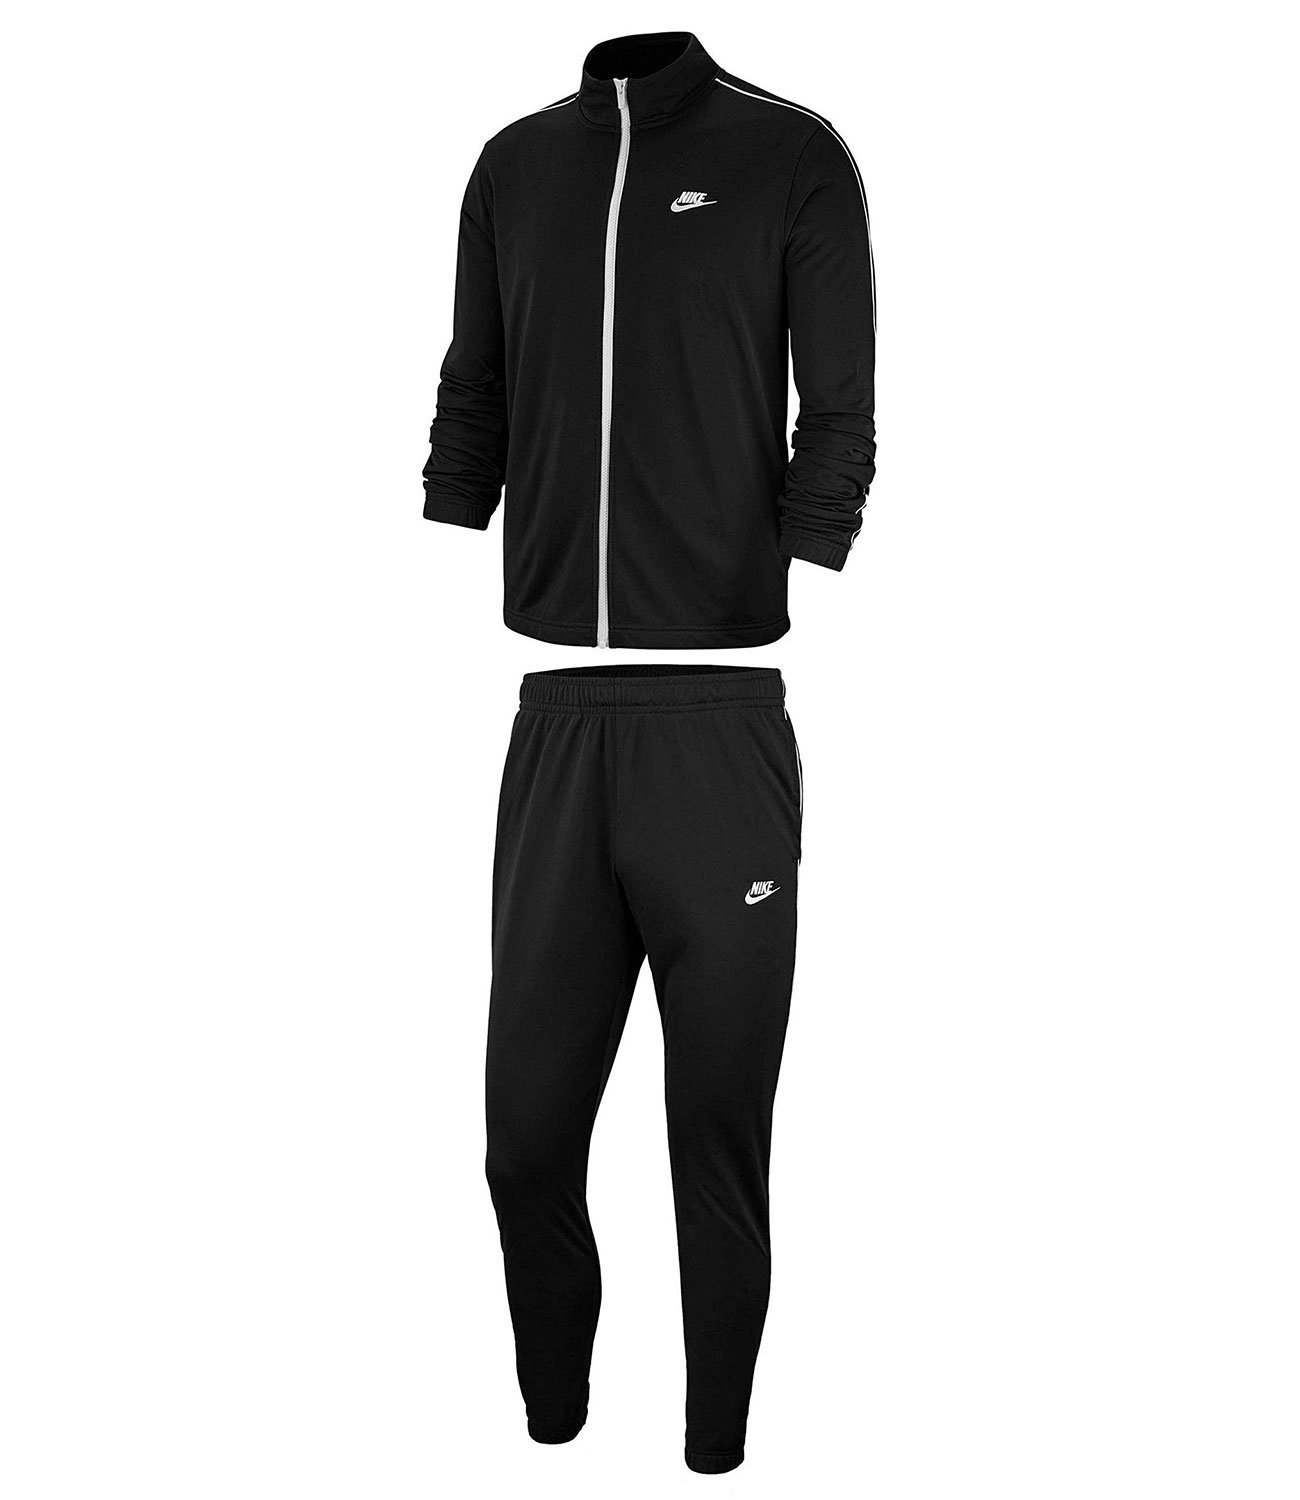 Нужен спортивный костюм. Черный спортивный костюм Nike bv3034-010. Nike bv3034-010. Черный спортивный костюм Nike Woven 886511-010. Nike Tracksuit костюм мужской.